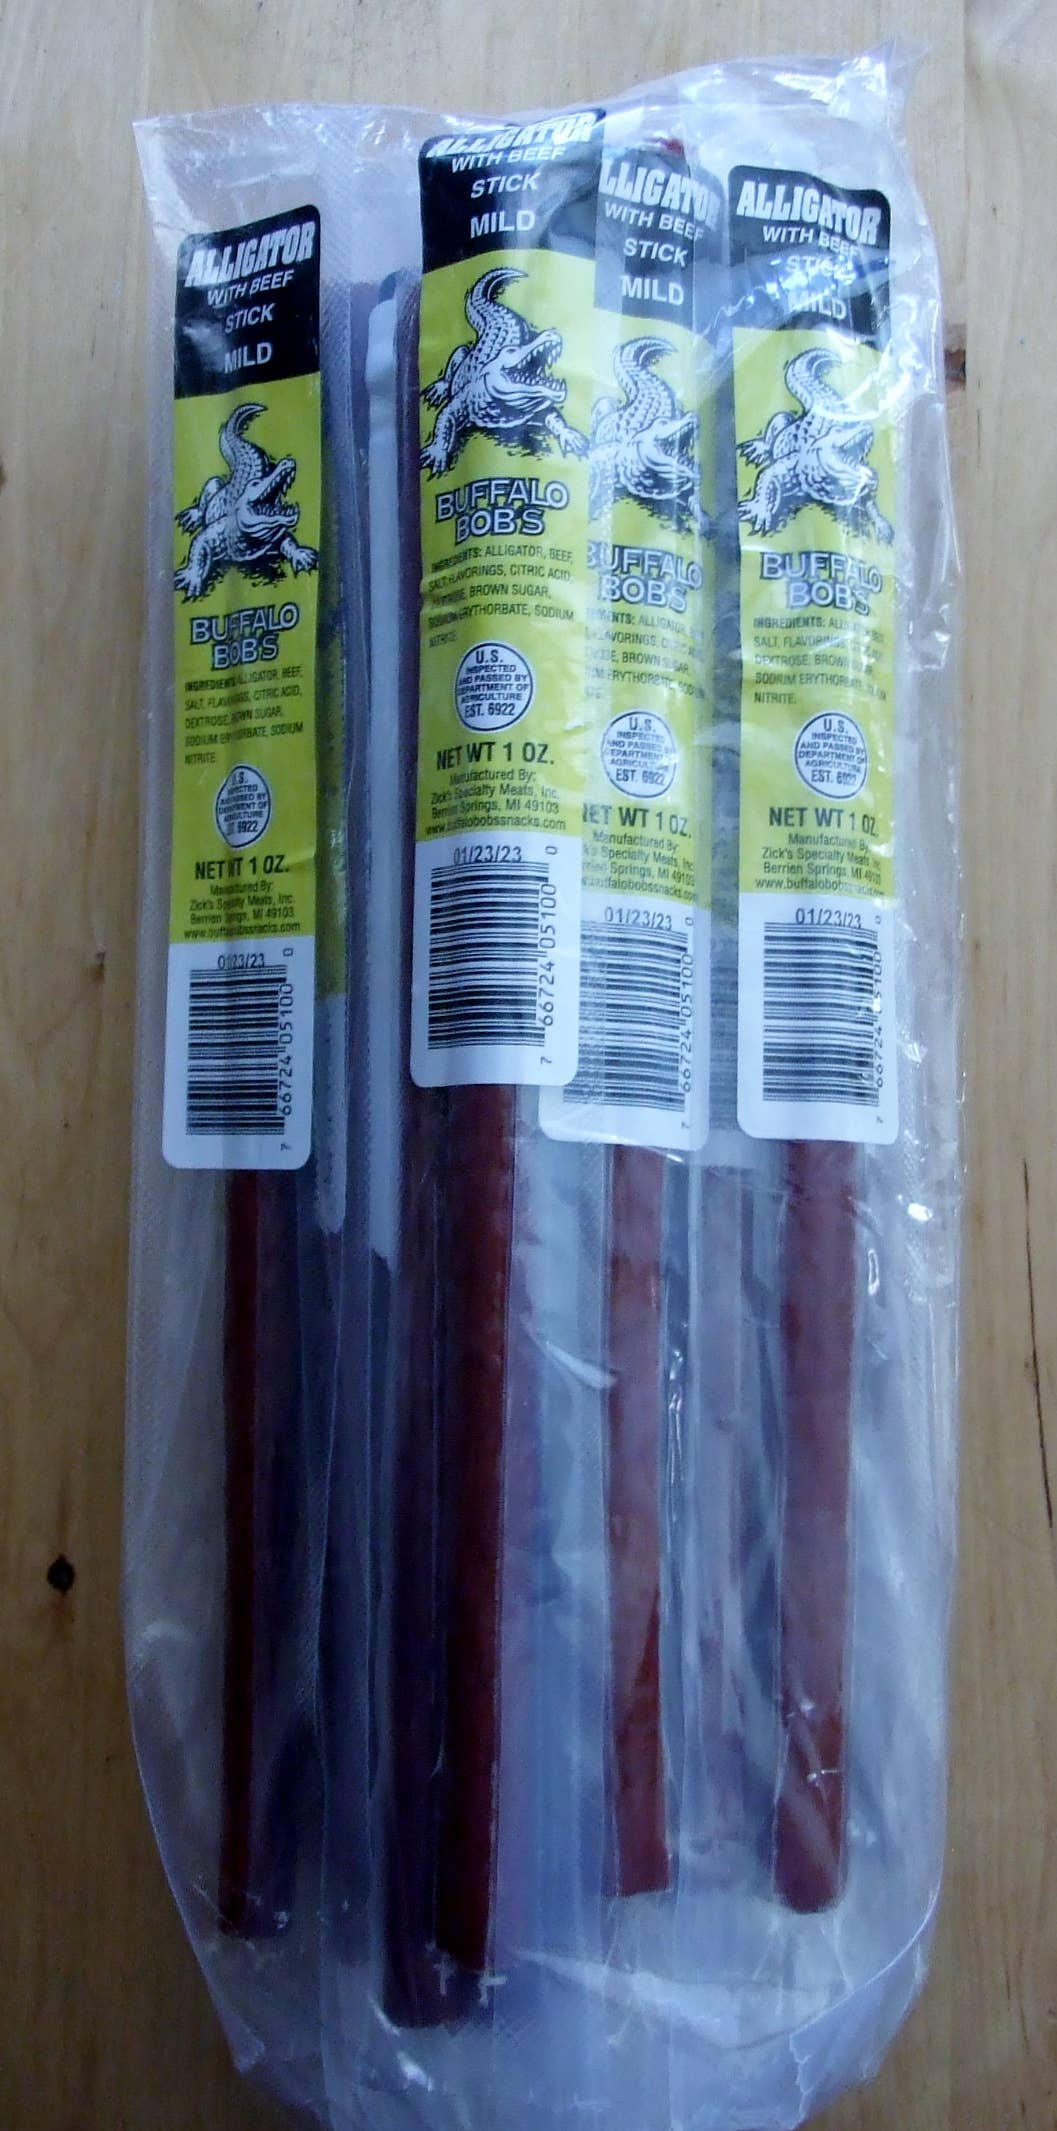 K & G Bulls Head Jerky LLC - Alligator Mild Meat Sticks 1 oz 24 Sticks Per Bag